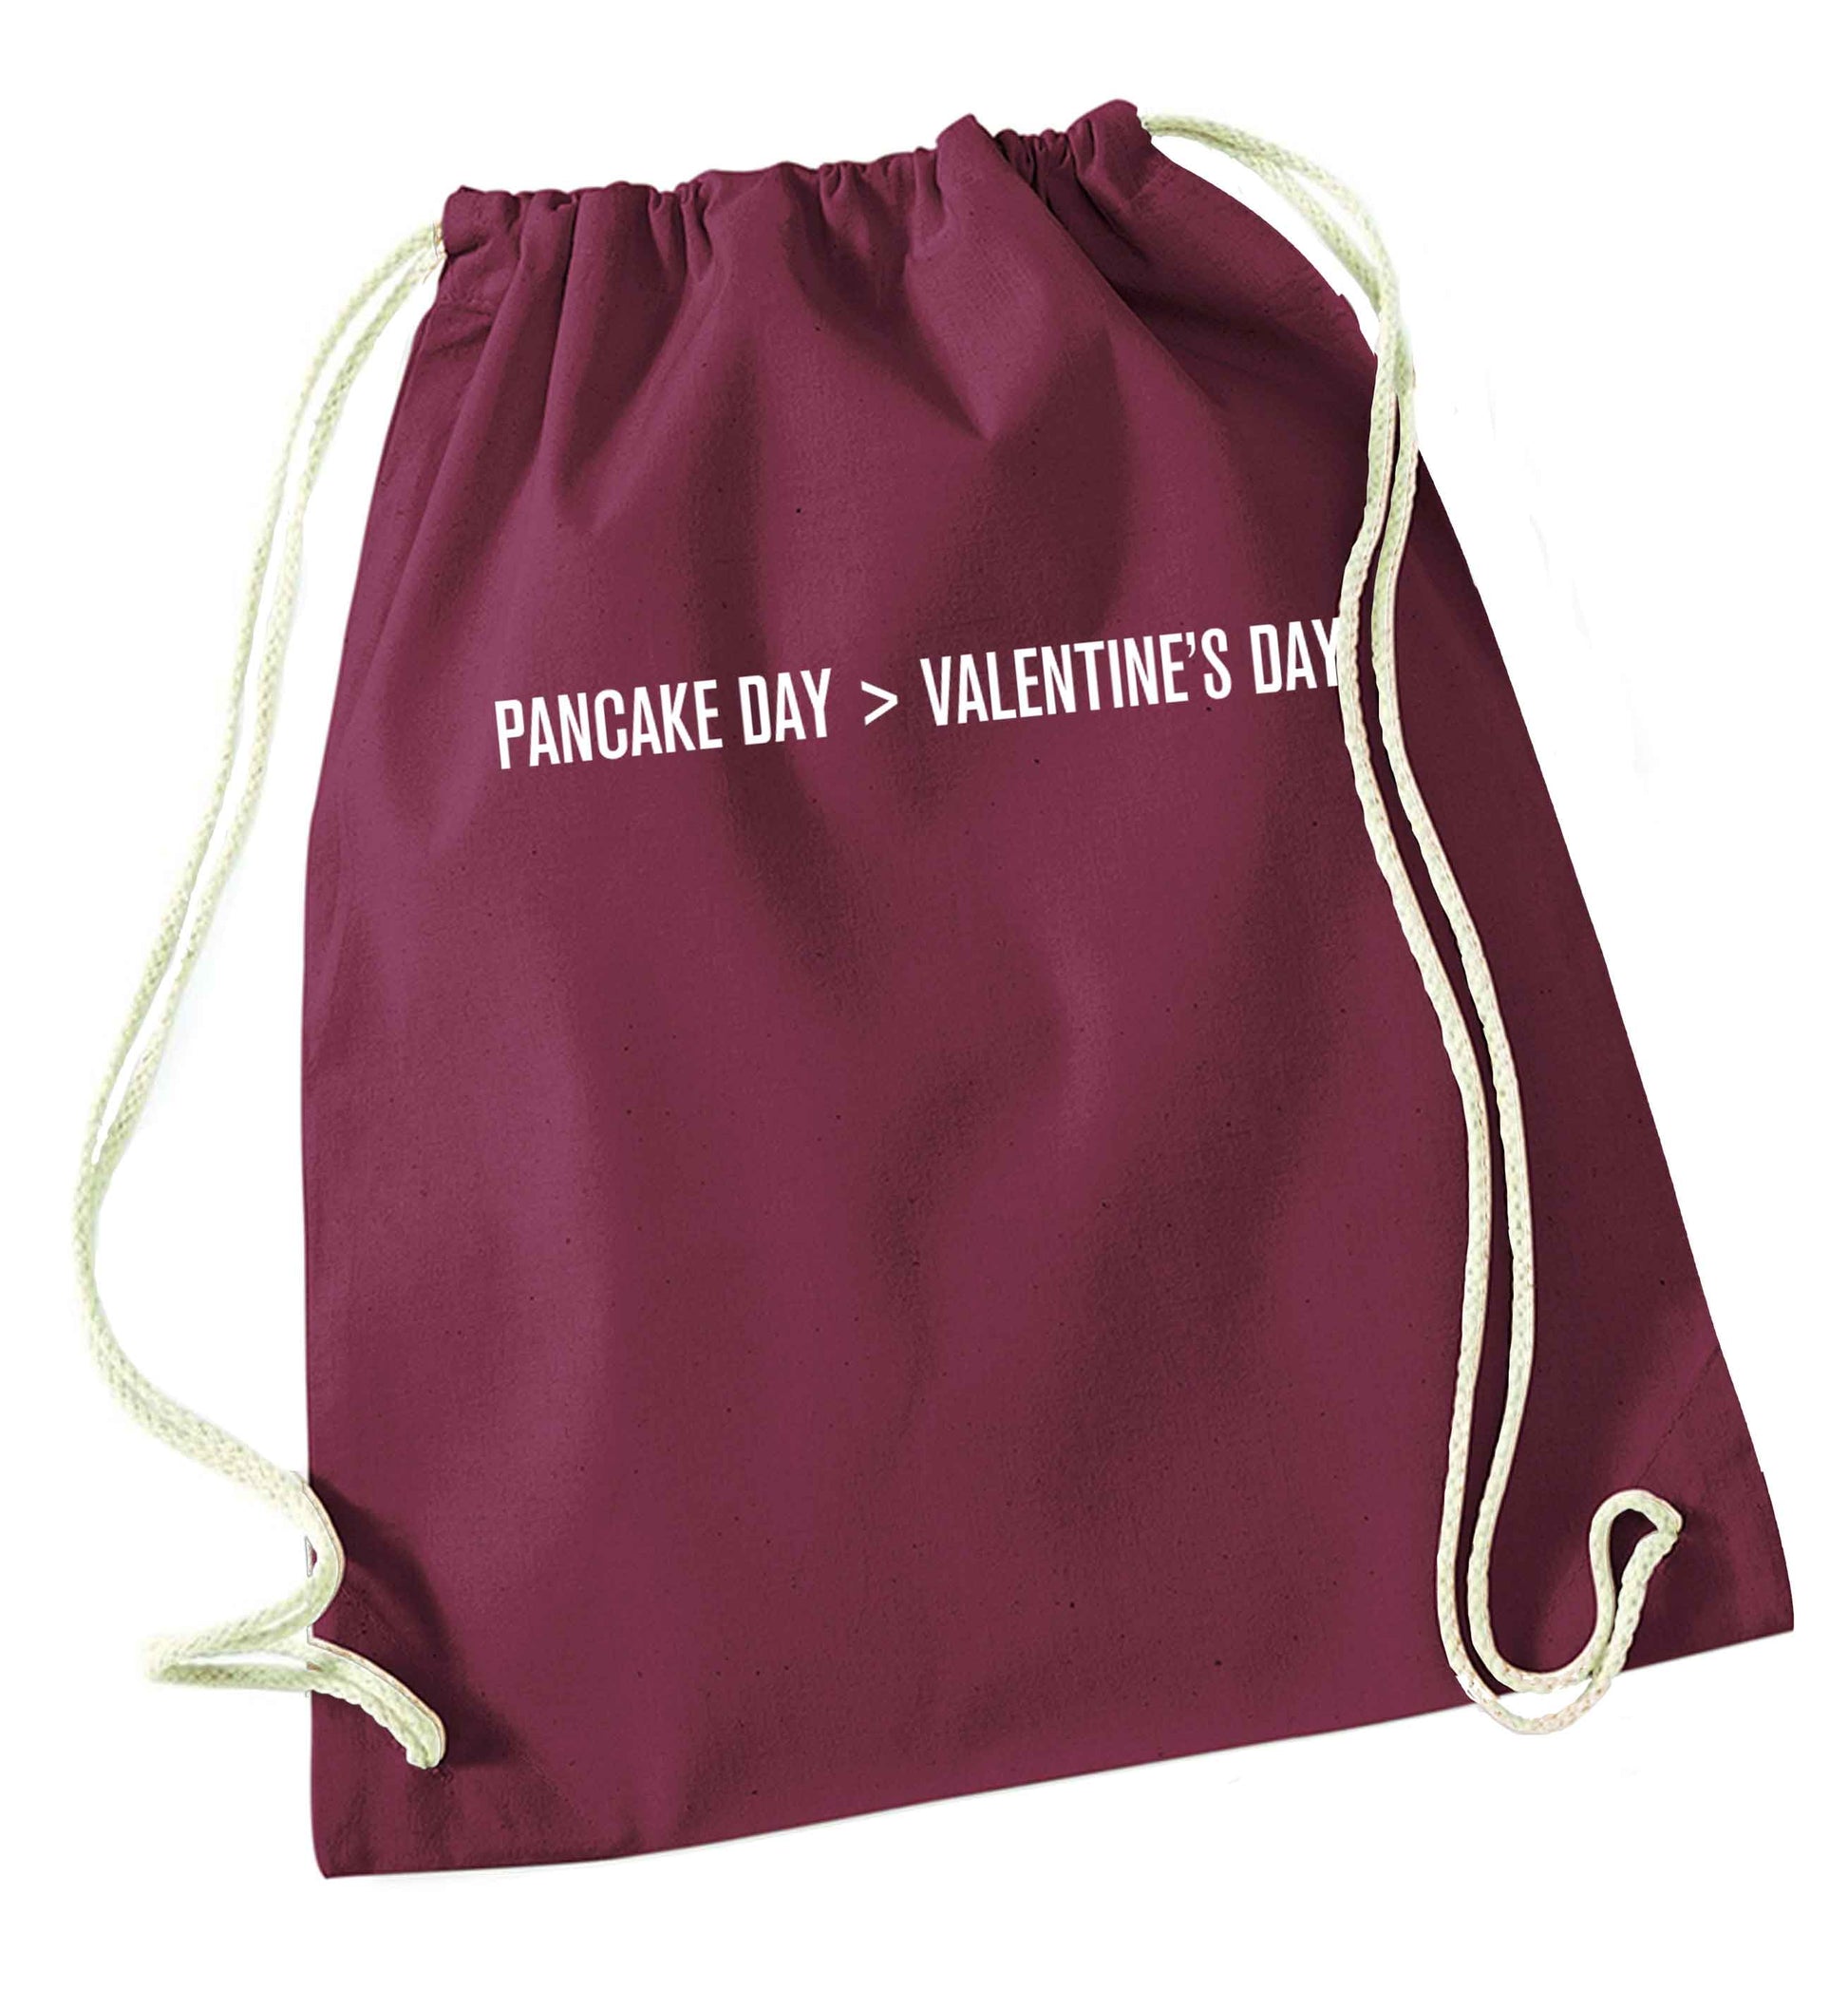 Pancake day > valentines day maroon drawstring bag